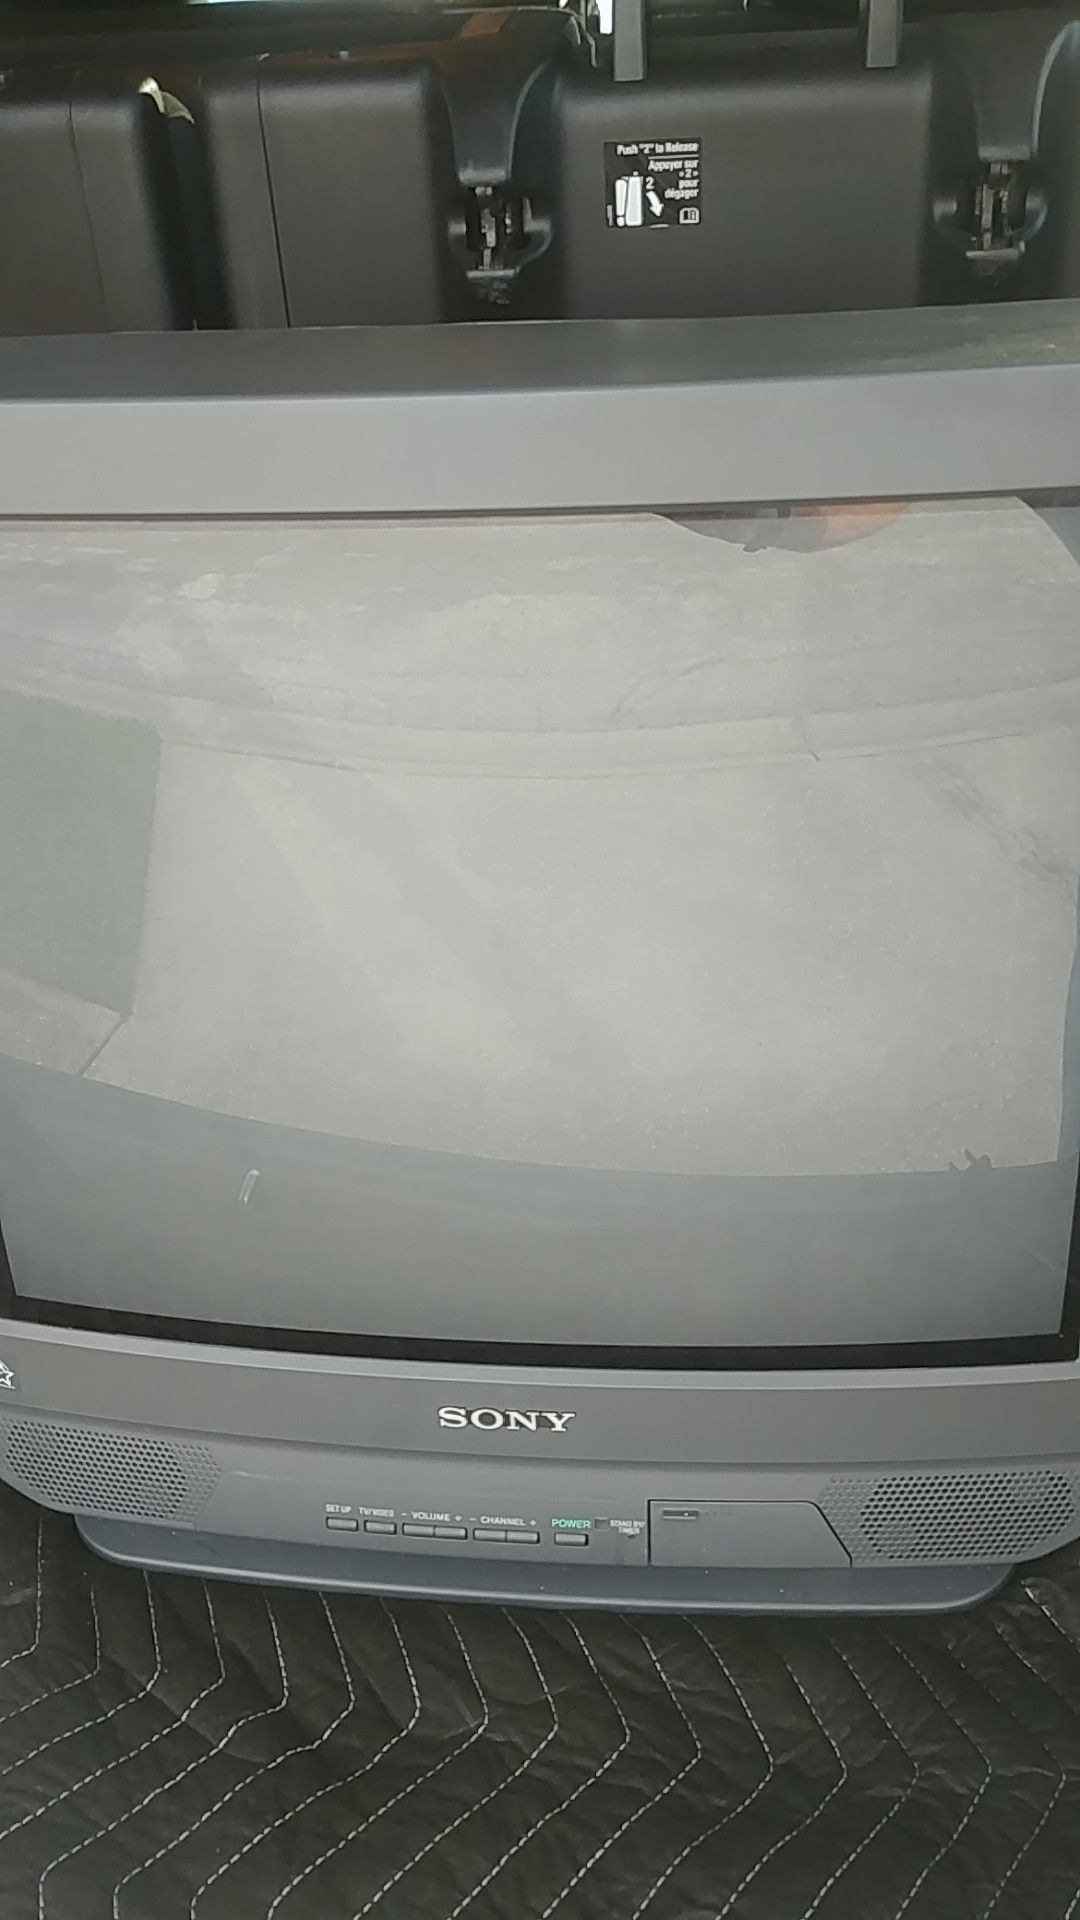 Sony 20 inch TV